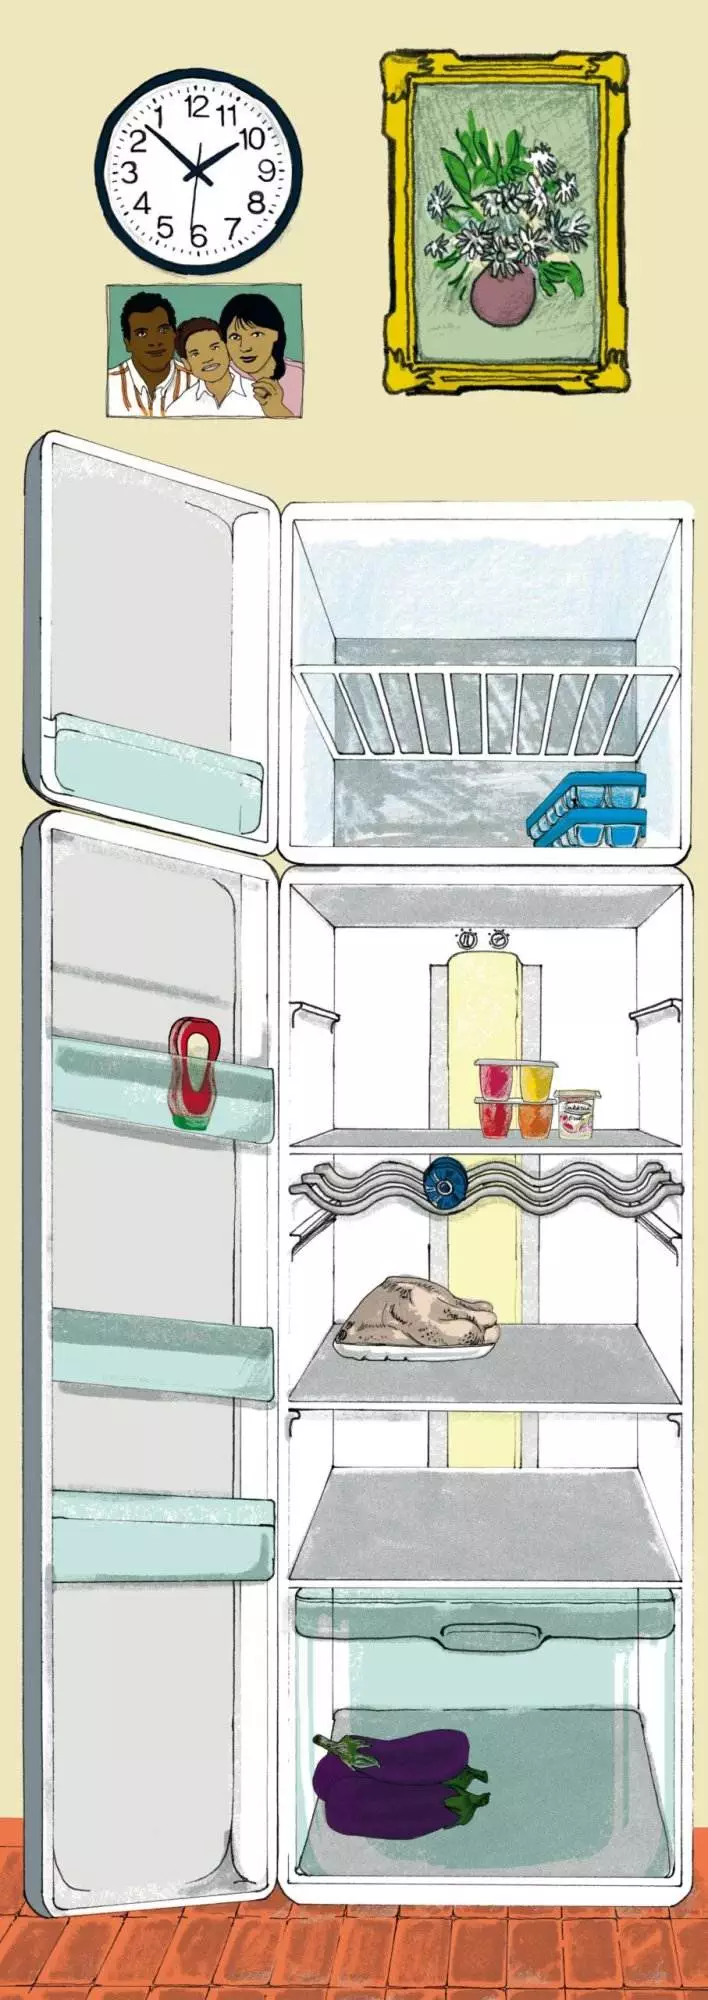 Dessin réfrigérateur - atelier anti-gaspi